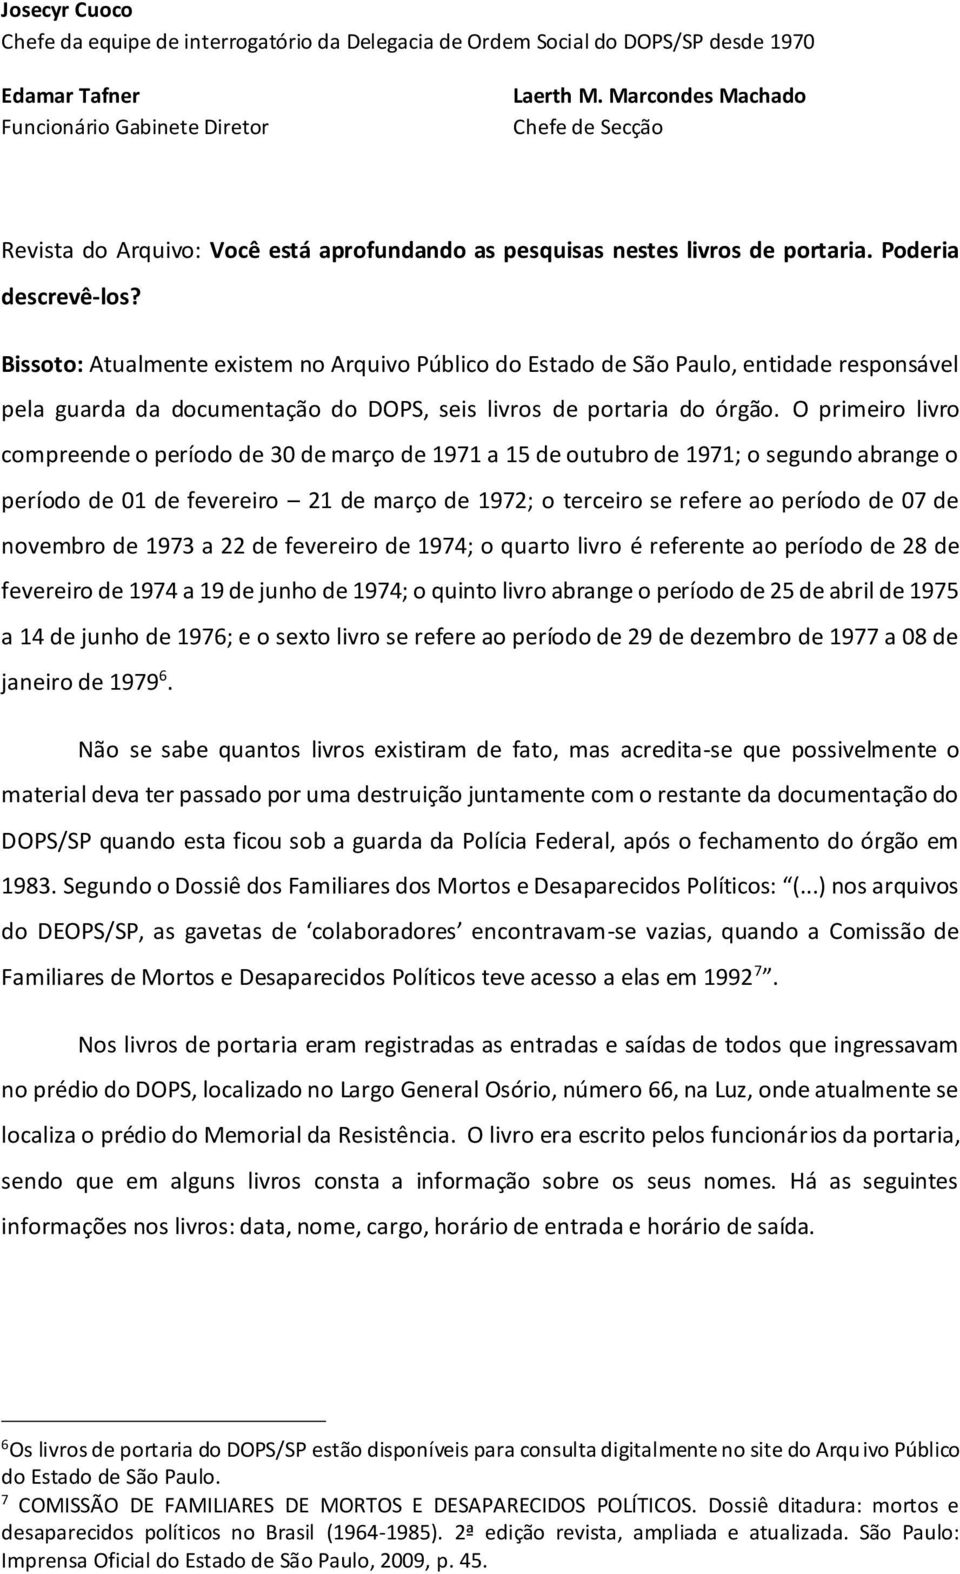 Bissoto: Atualmente existem no Arquivo Público do Estado de São Paulo, entidade responsável pela guarda da documentação do DOPS, seis livros de portaria do órgão.